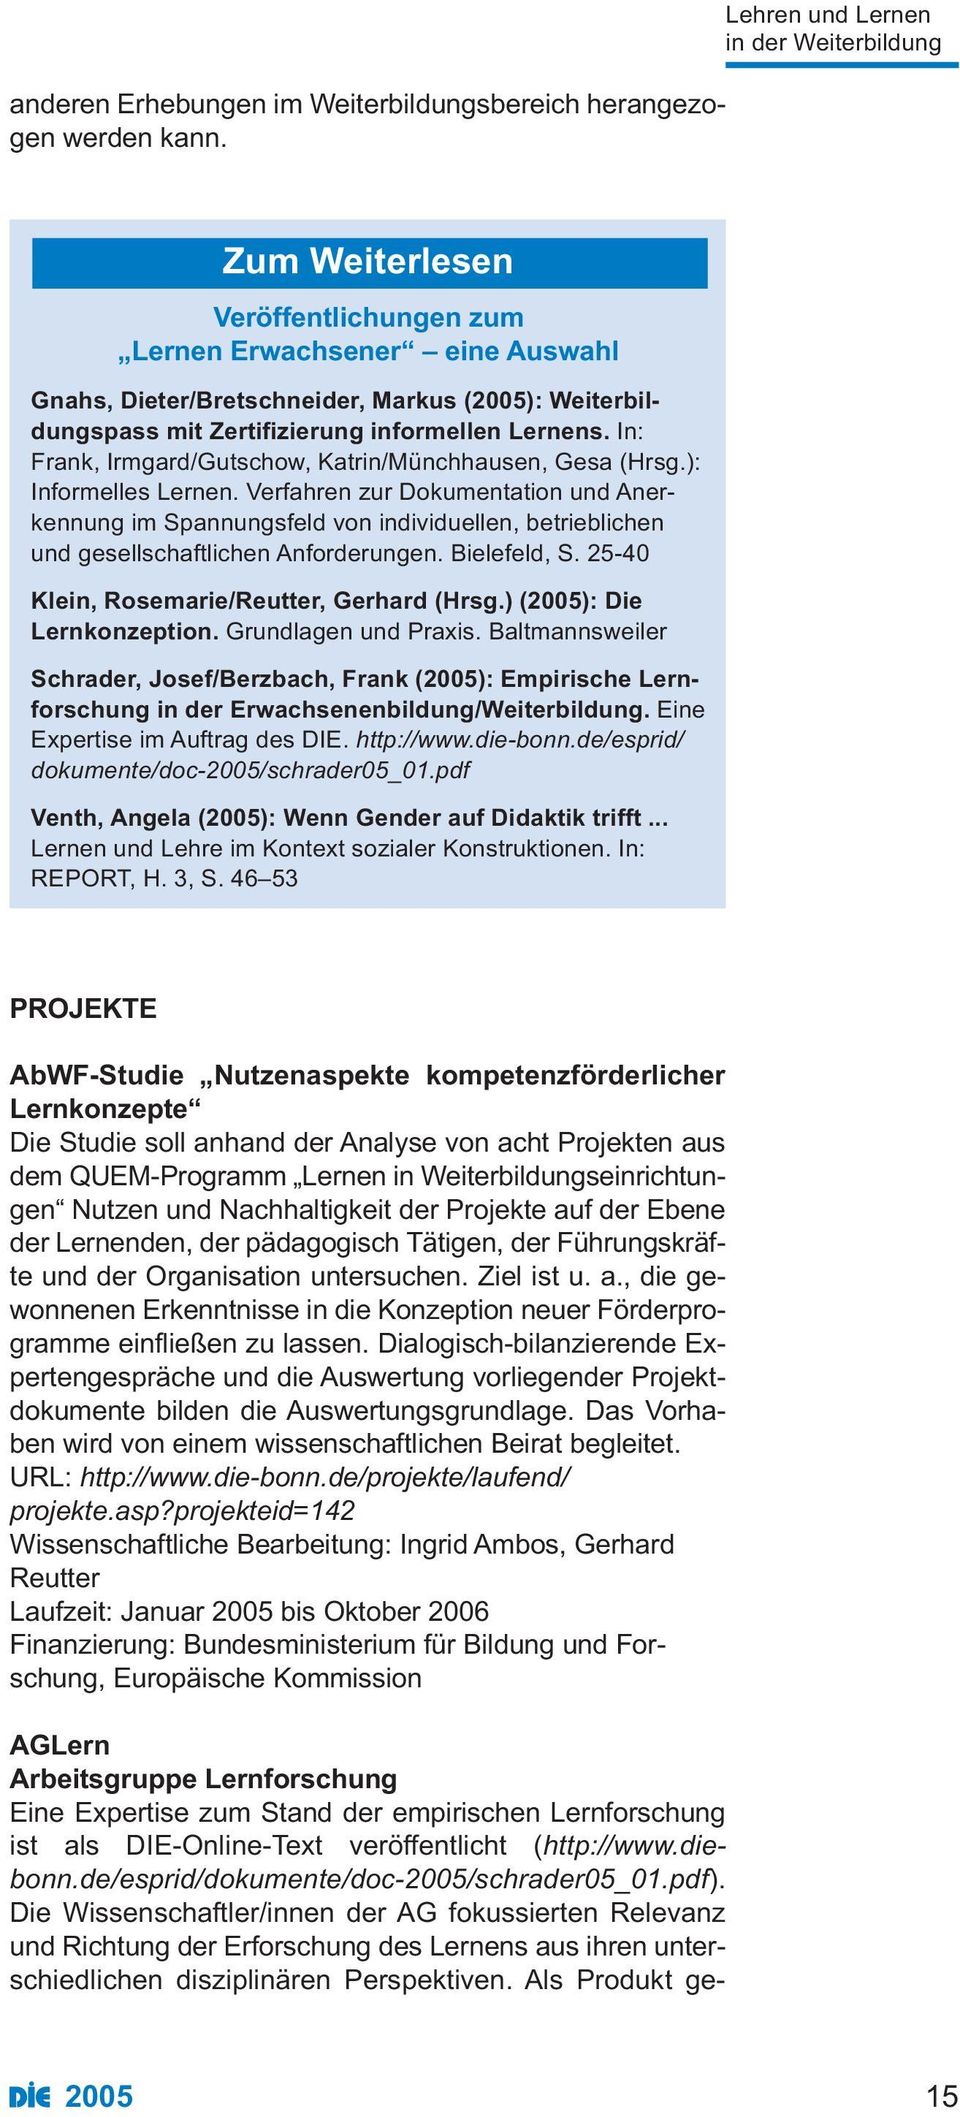 Lernens. In: Frank, Irmgard/Gutschow, Katrin/Münchhausen, Gesa (Hrsg.): Informelles Lernen.